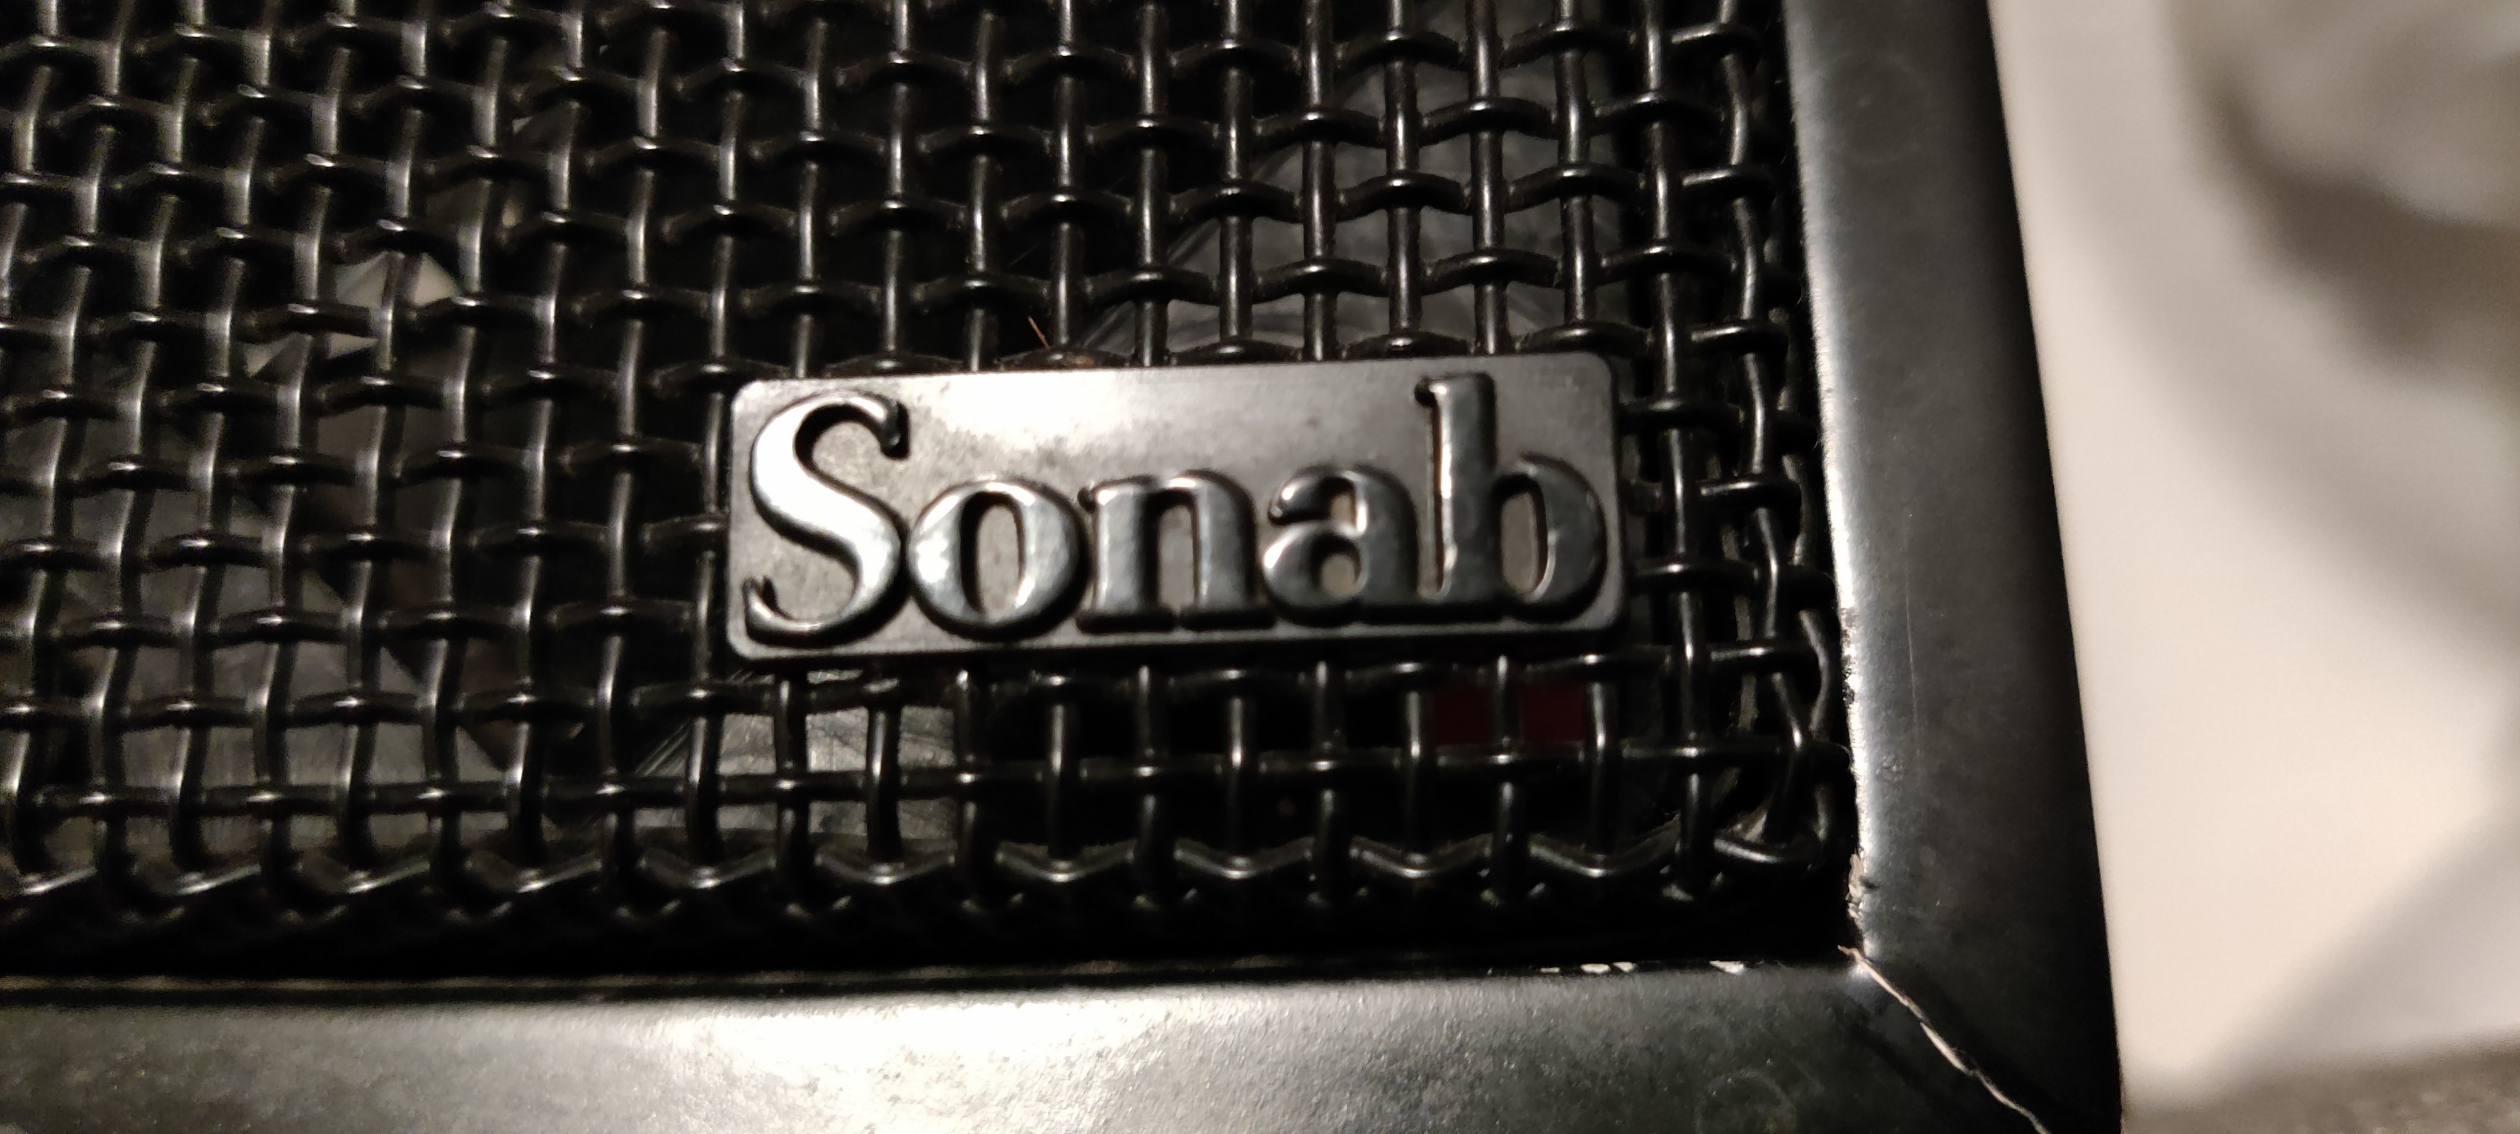 Sonab OD11 emblem.jpg